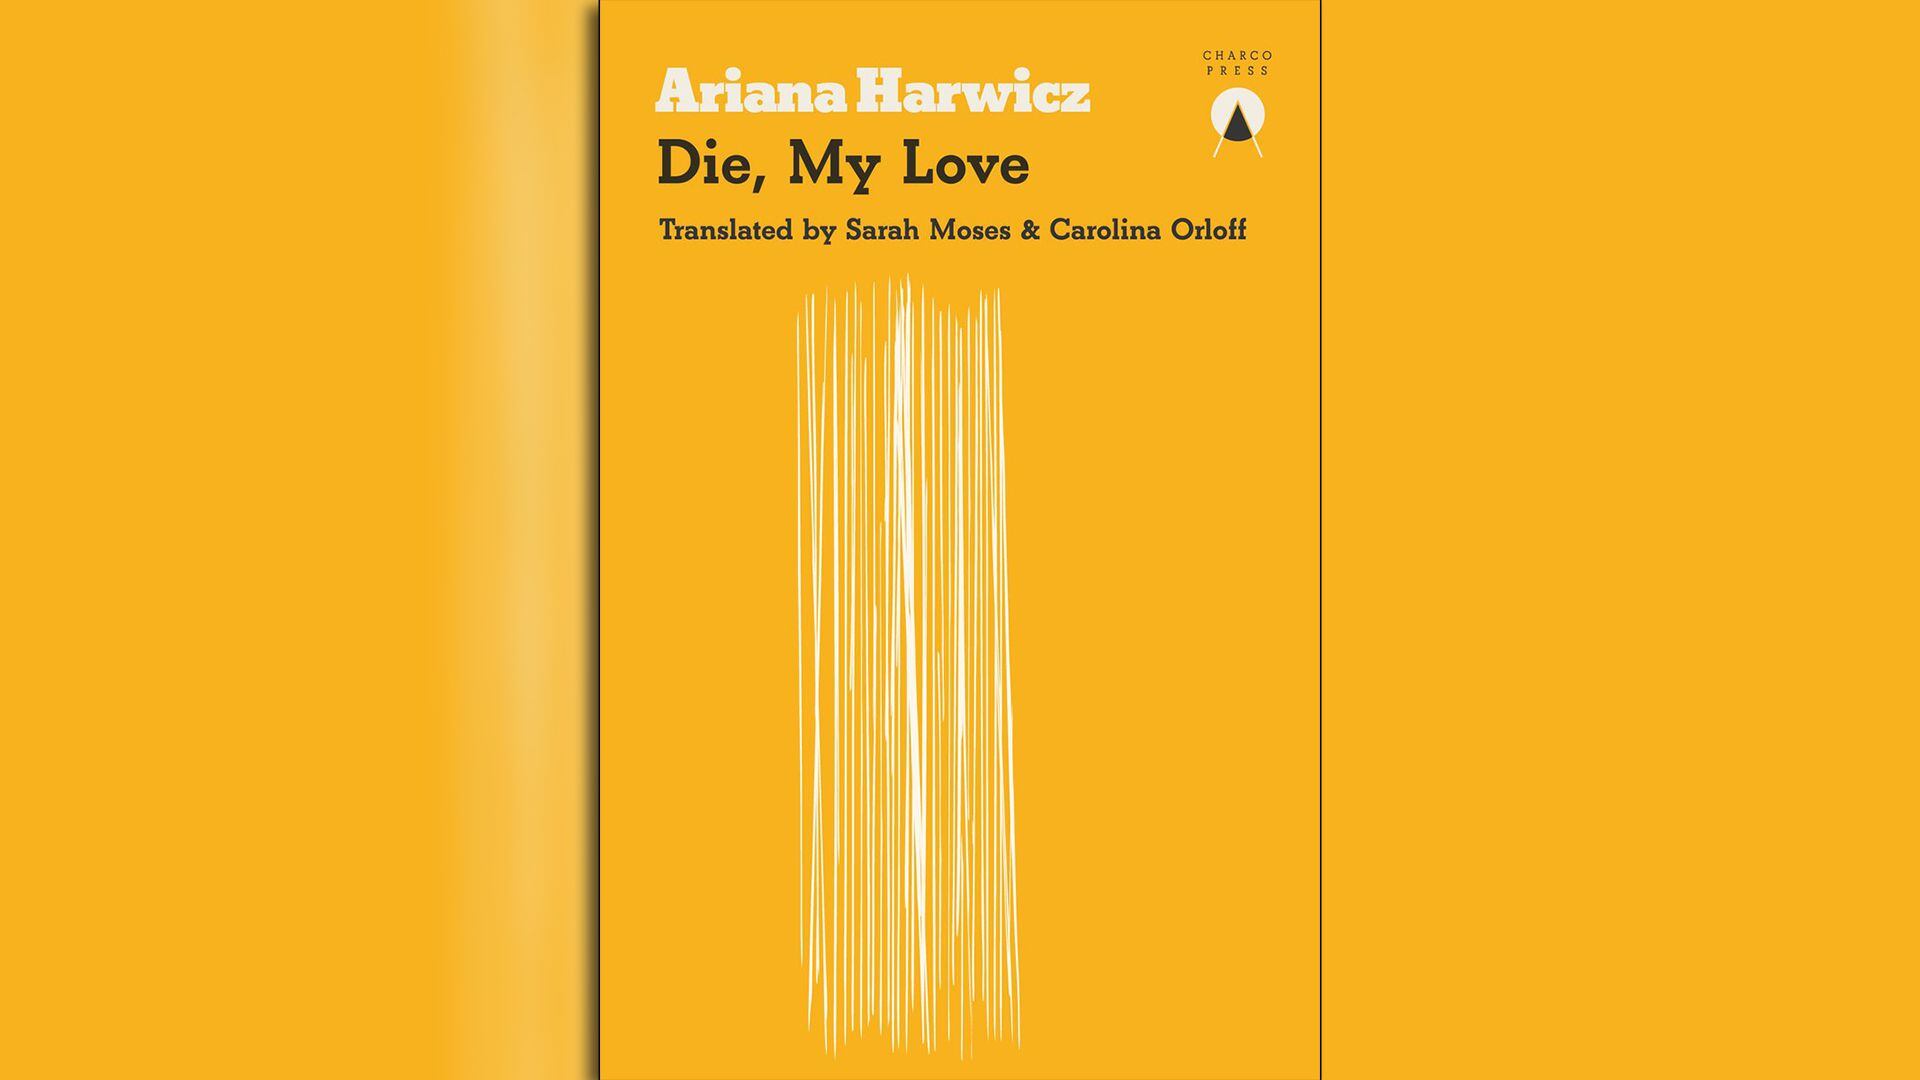 Portada de la edición en inglés de "Matate, amor" de Adriana Harwicz. Esa traducción, según la autora, fue la que "abrió la puerta" a todo lo que vino después